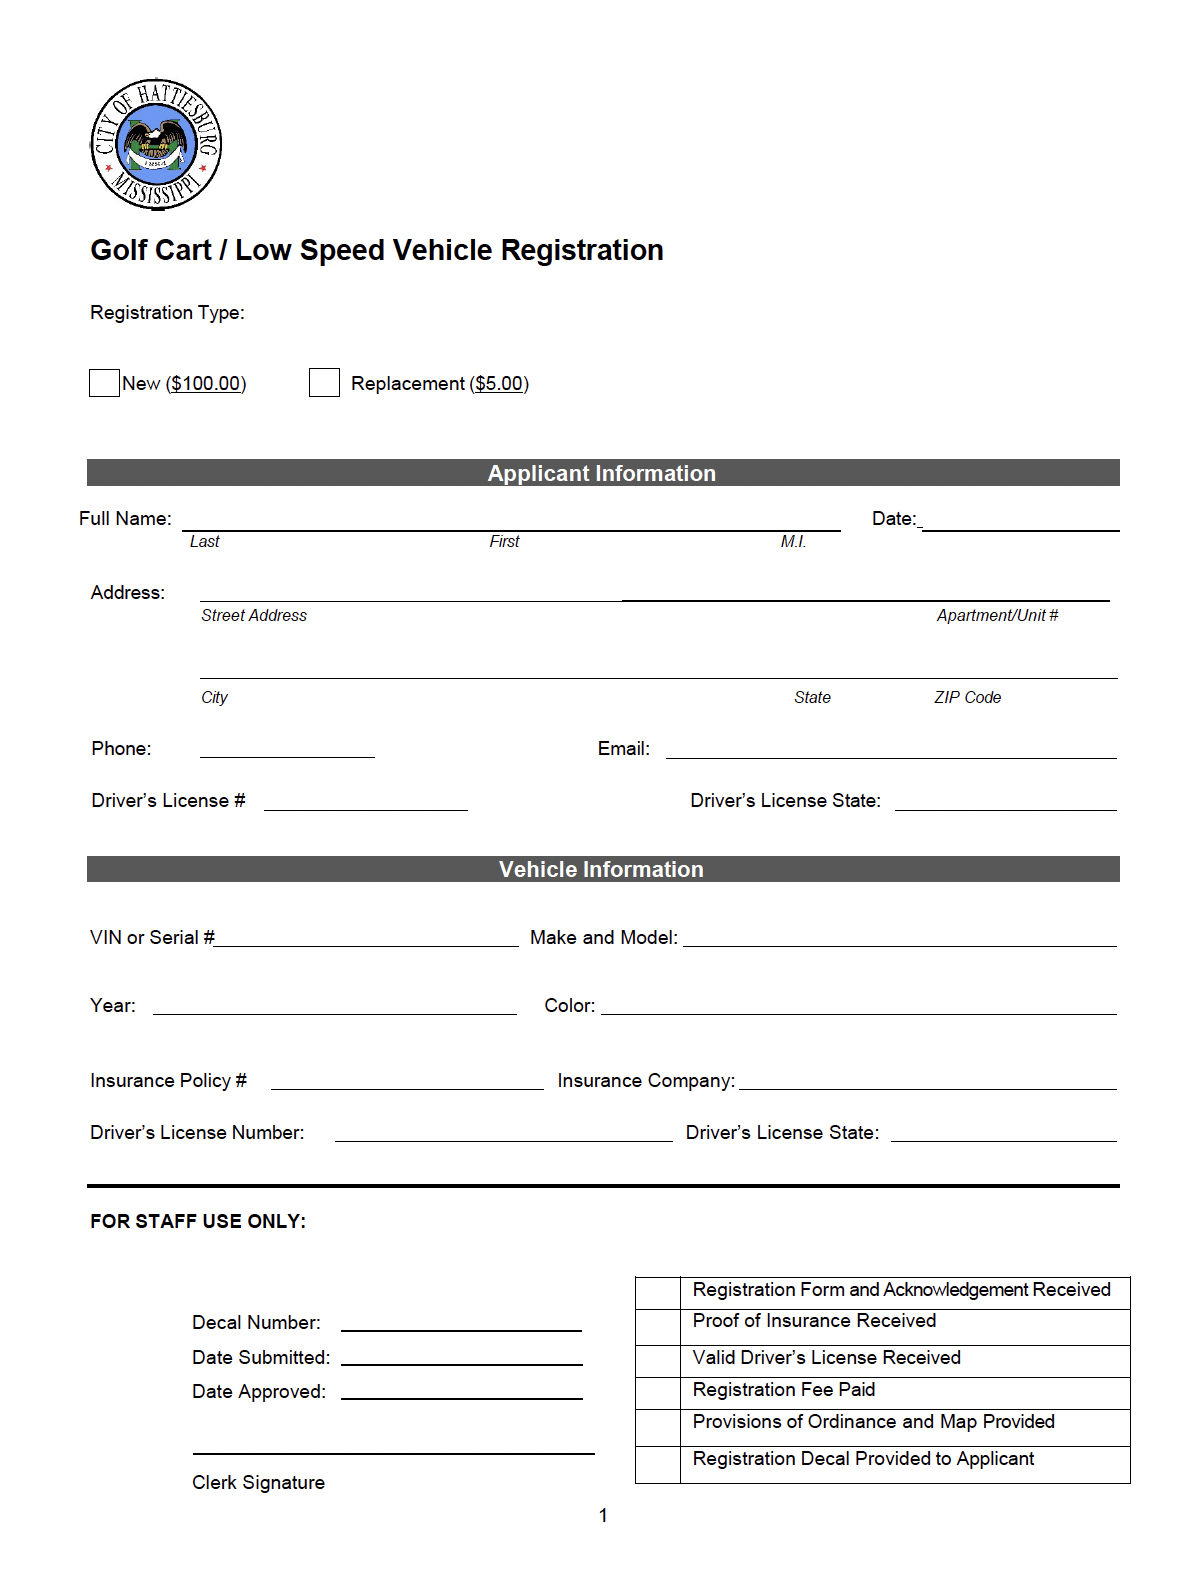 golfcart_registrationform_2022